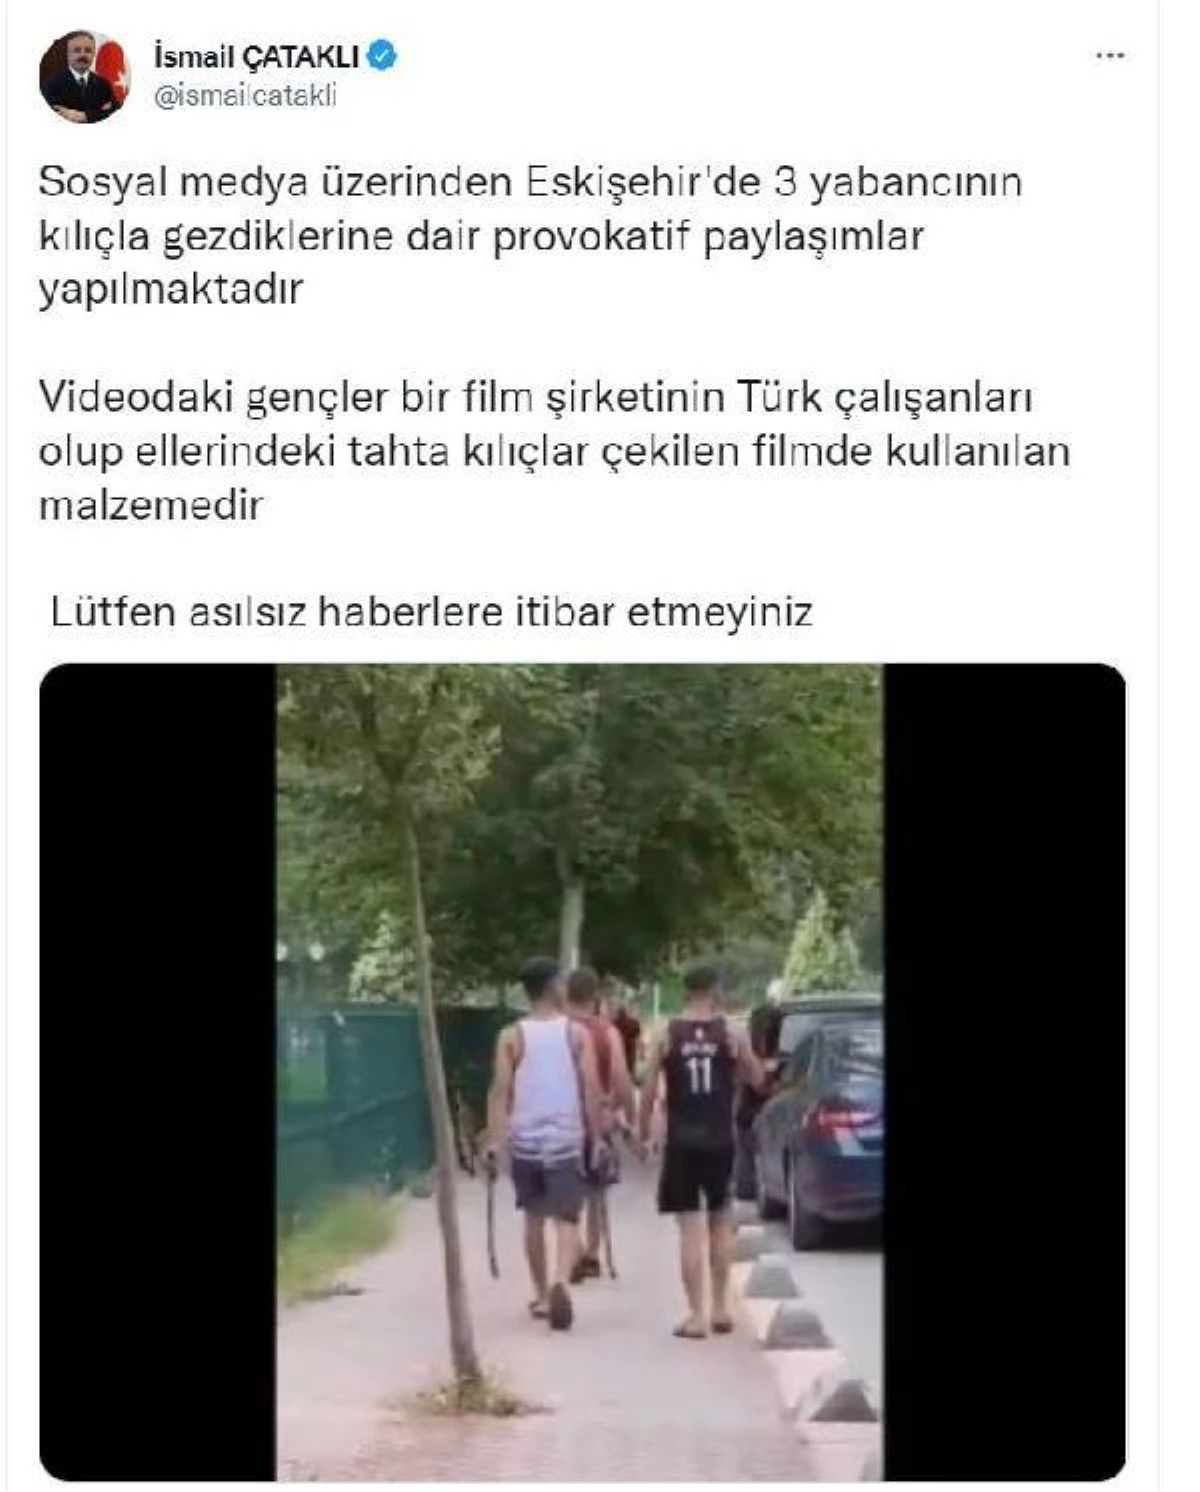 Çataklı\'dan Eskişehir\'de 3 yabancının kılıçla gezdiği iddiasına ilişkin açıklama Açıklaması